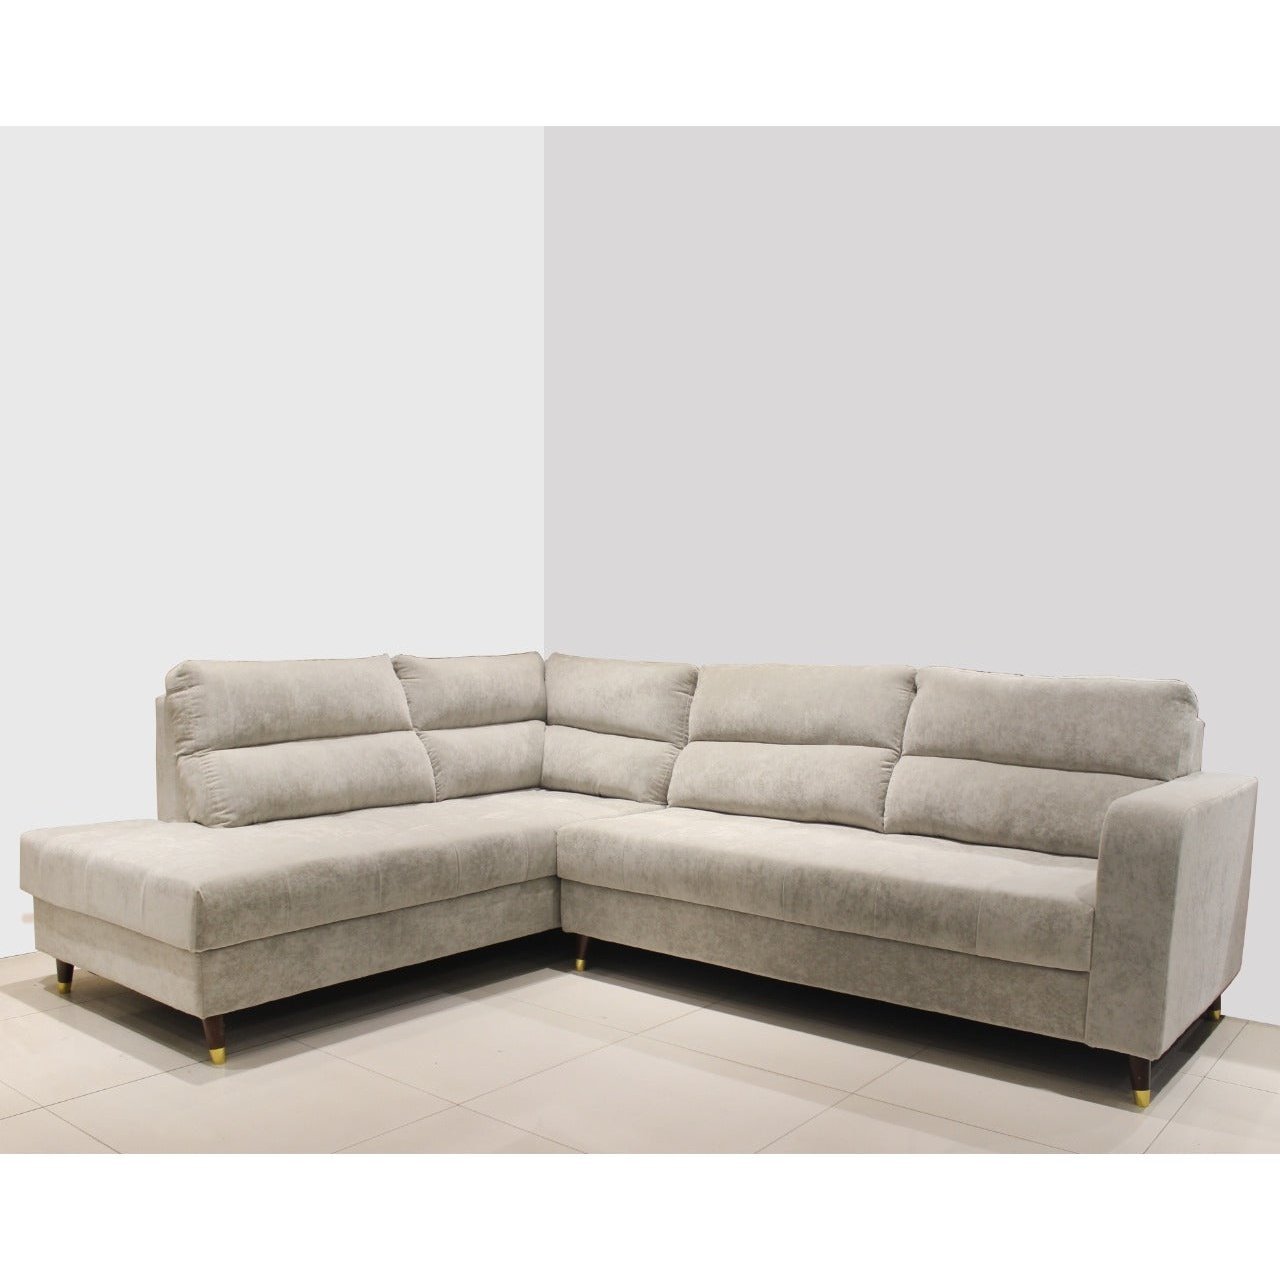 VR-179 C DENNIS, L SHAPE SOFA SET 3+L Mobel Furniture